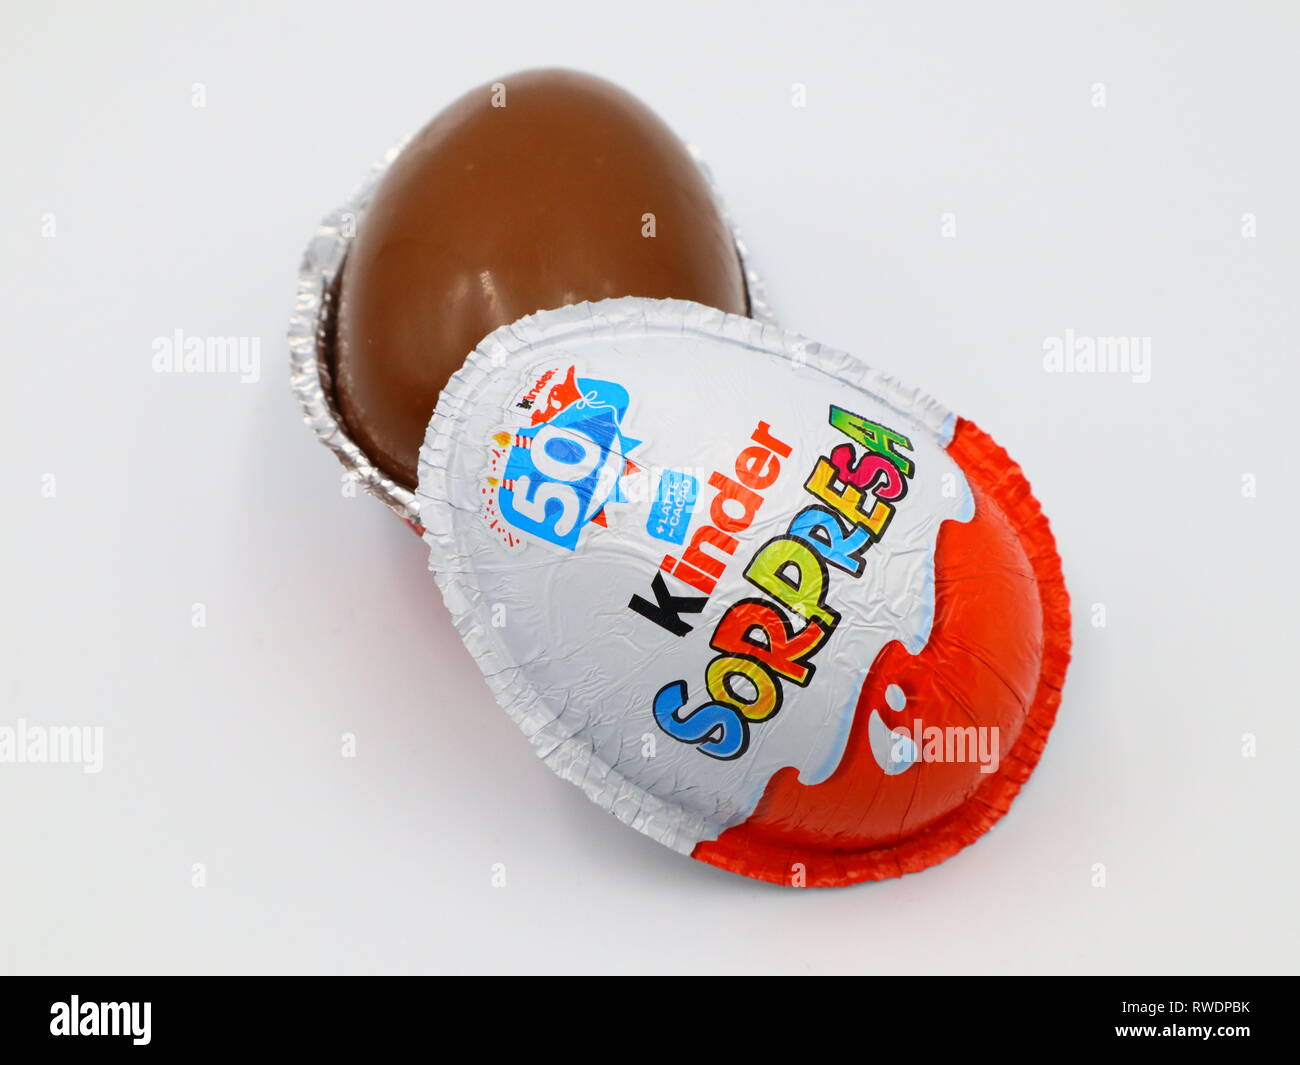 Kinder Überraschung Schokolade Eier. Kinder Überraschung ist eine Marke der  Produkte in Italien, die von Ferrero Stockfotografie - Alamy